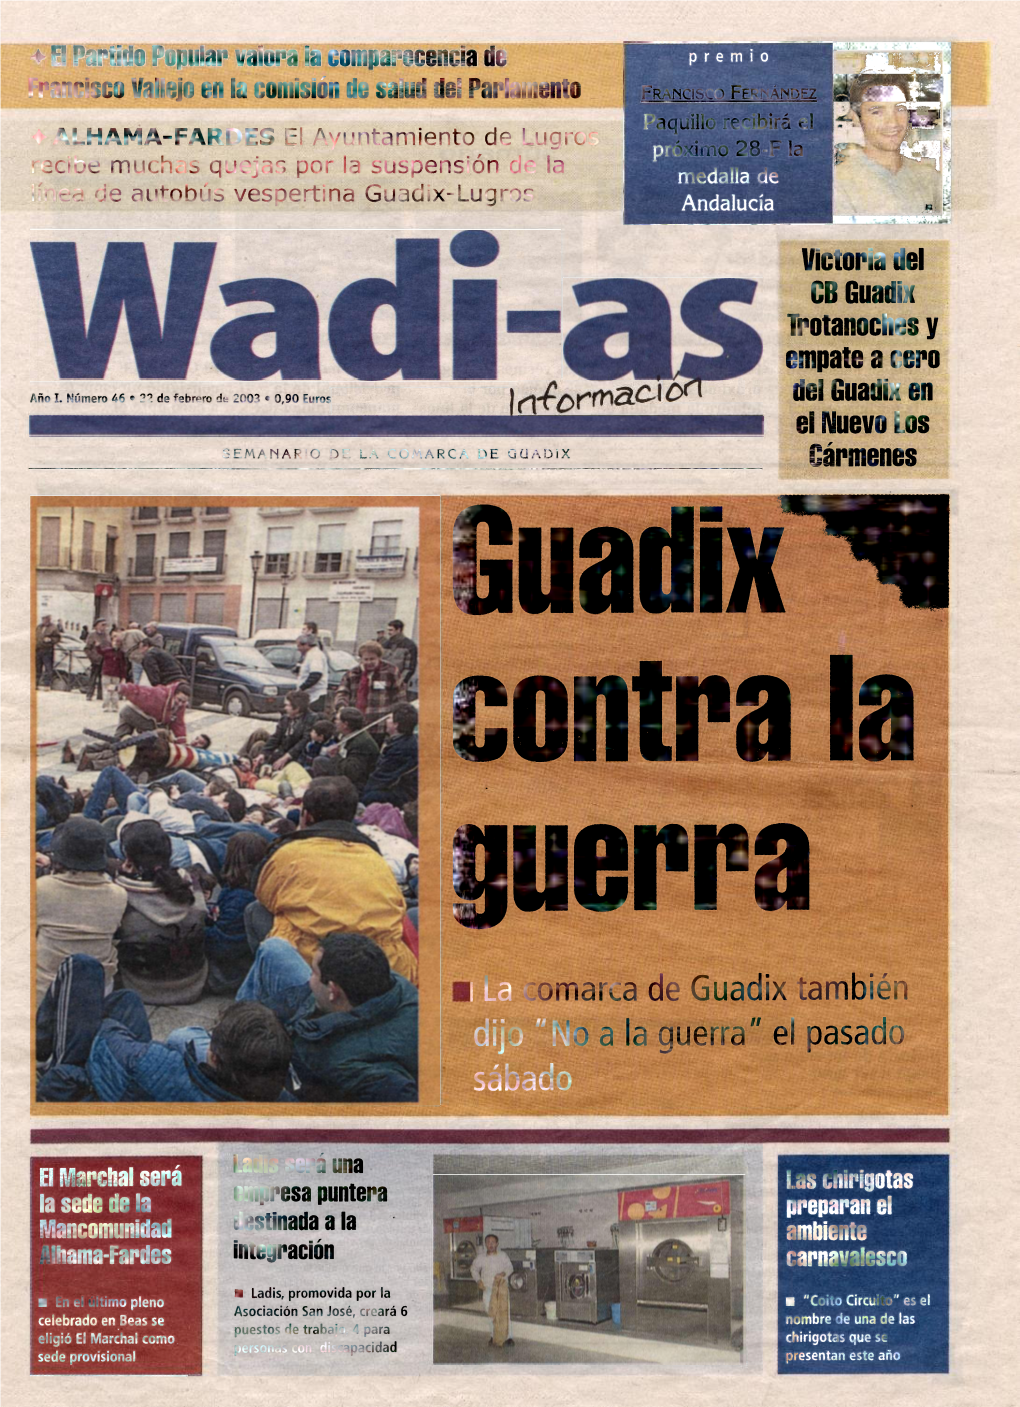 I La Comarca De Guadix También Dijo "No a La Guerra" El Pasado Sábado